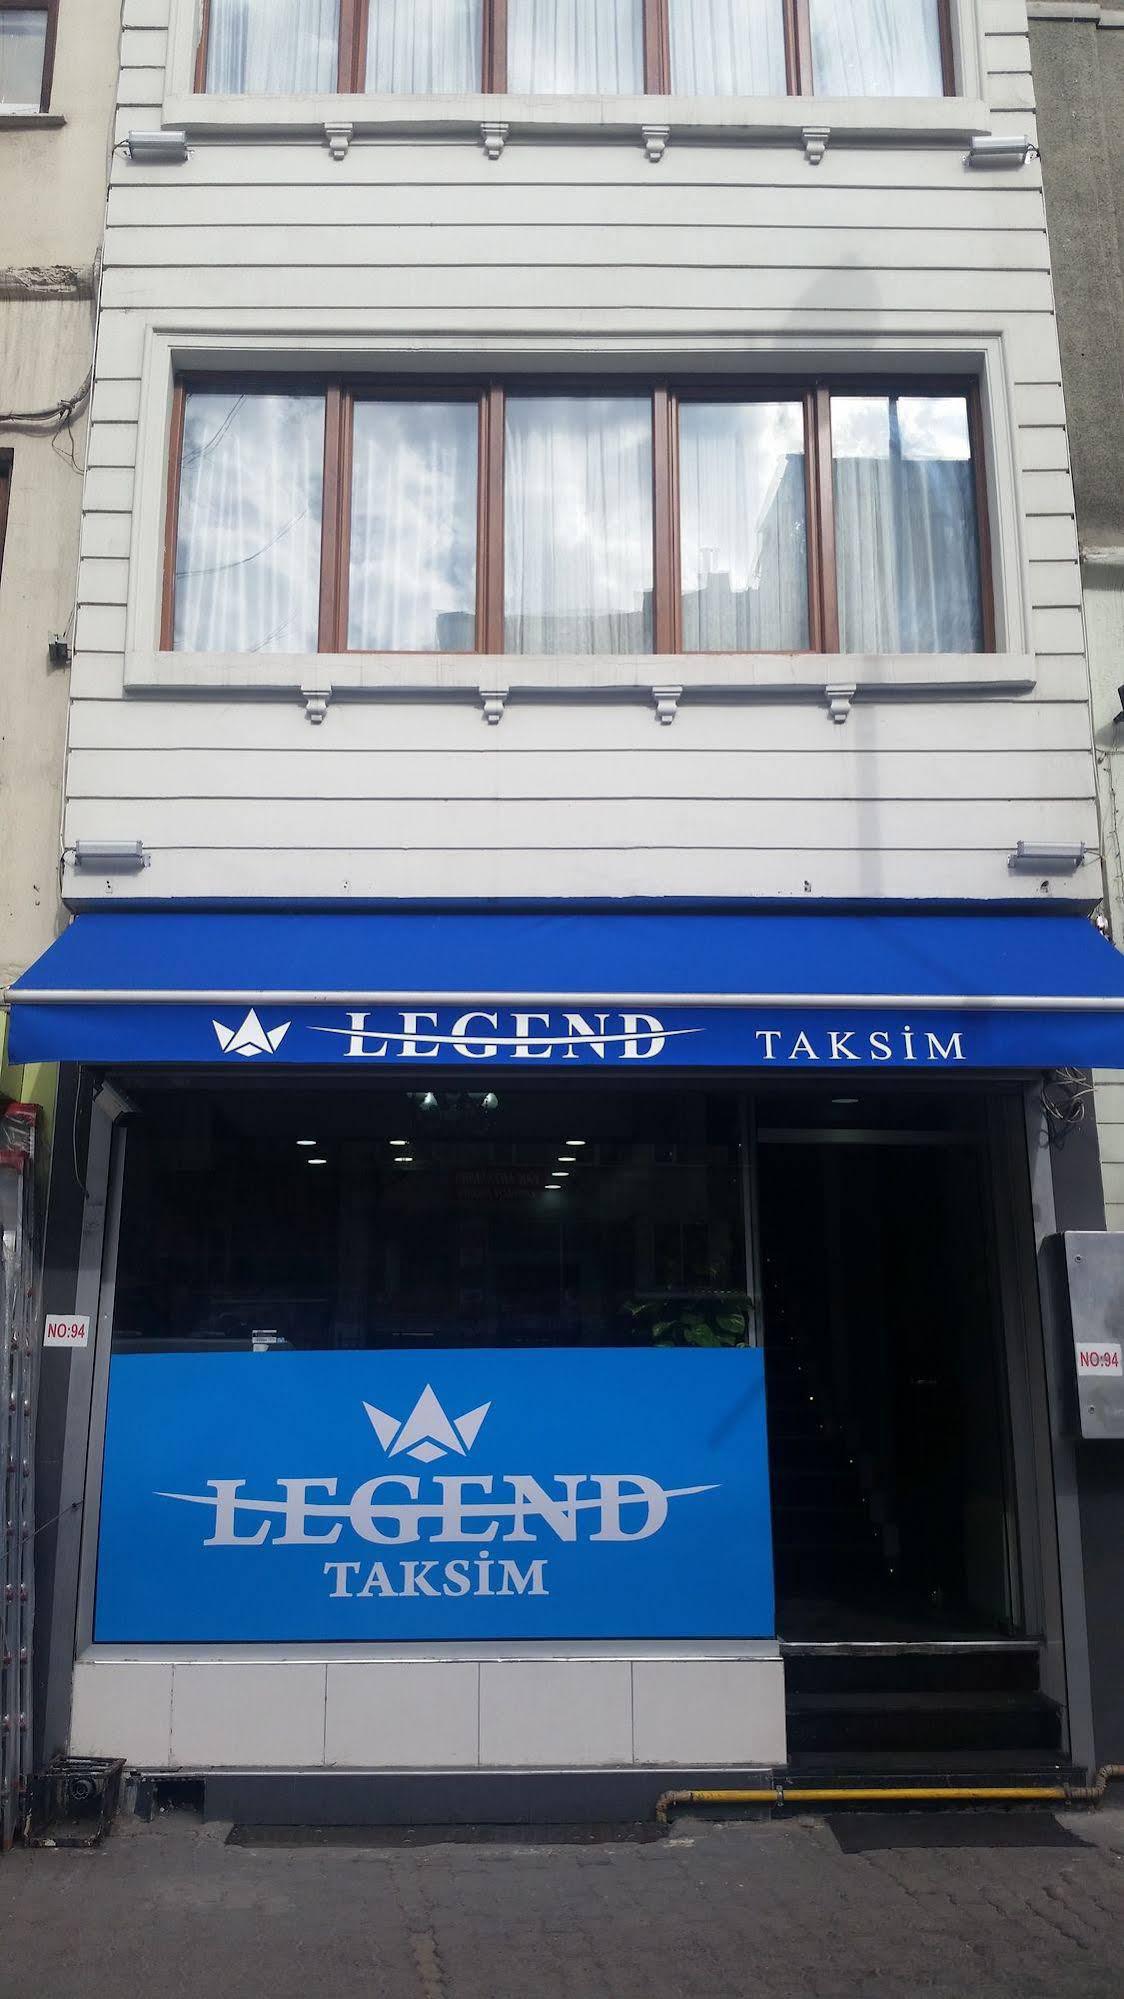 Legend Taksim